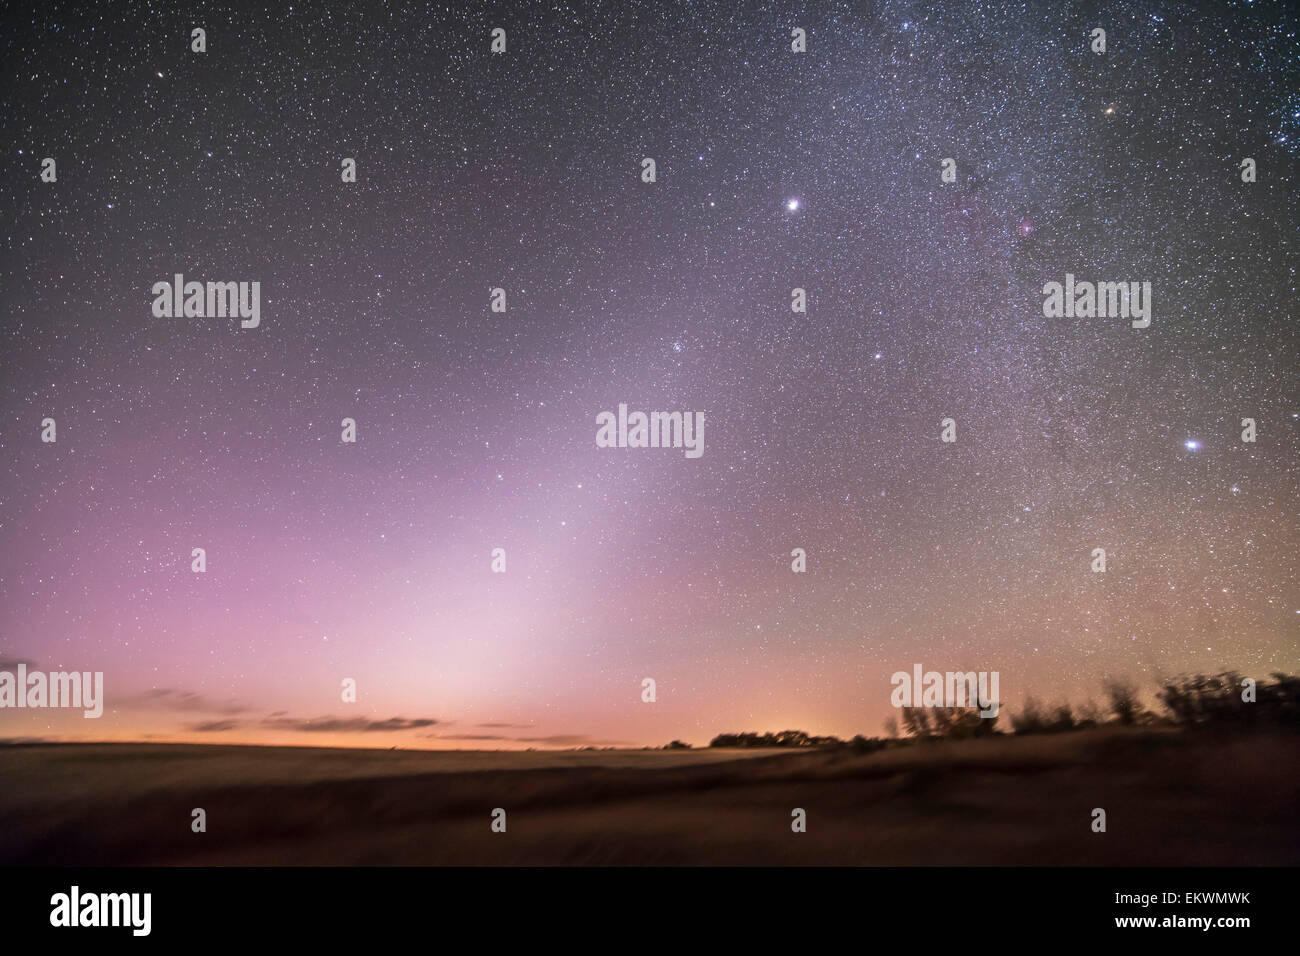 Octubre 7, 2013 - La luz zodiacal en el cielo antes del amanecer en Alberta, Canadá. Leo está justo subiendo de centro izquierda, con Marte arriba Foto de stock